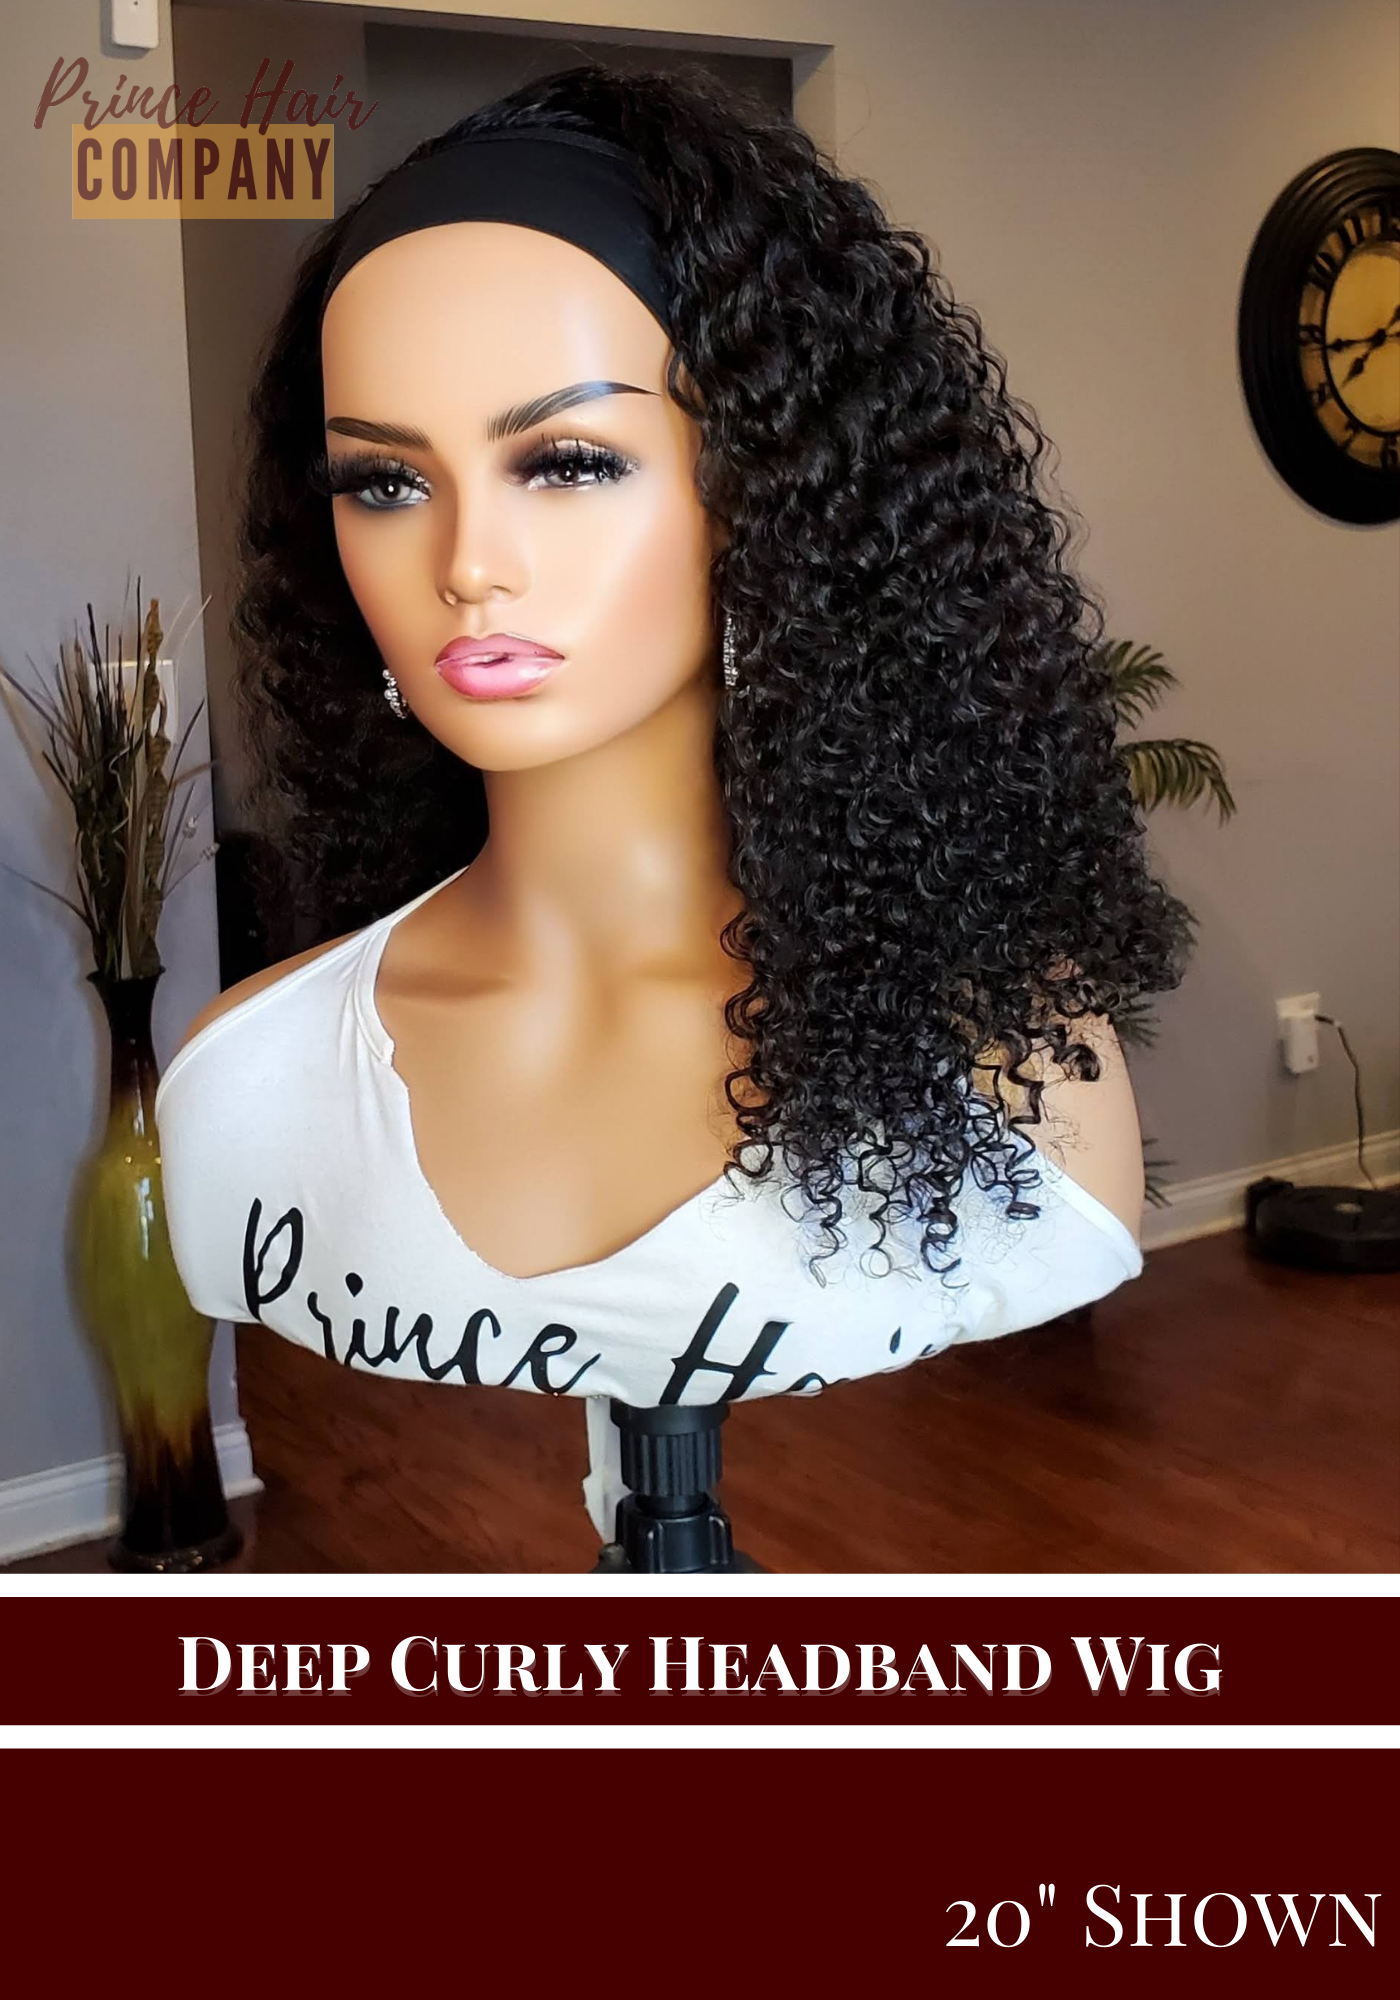 Custom Headband Wigs - Malaysian Deep Curly | Comes with 1 Elastic Headband